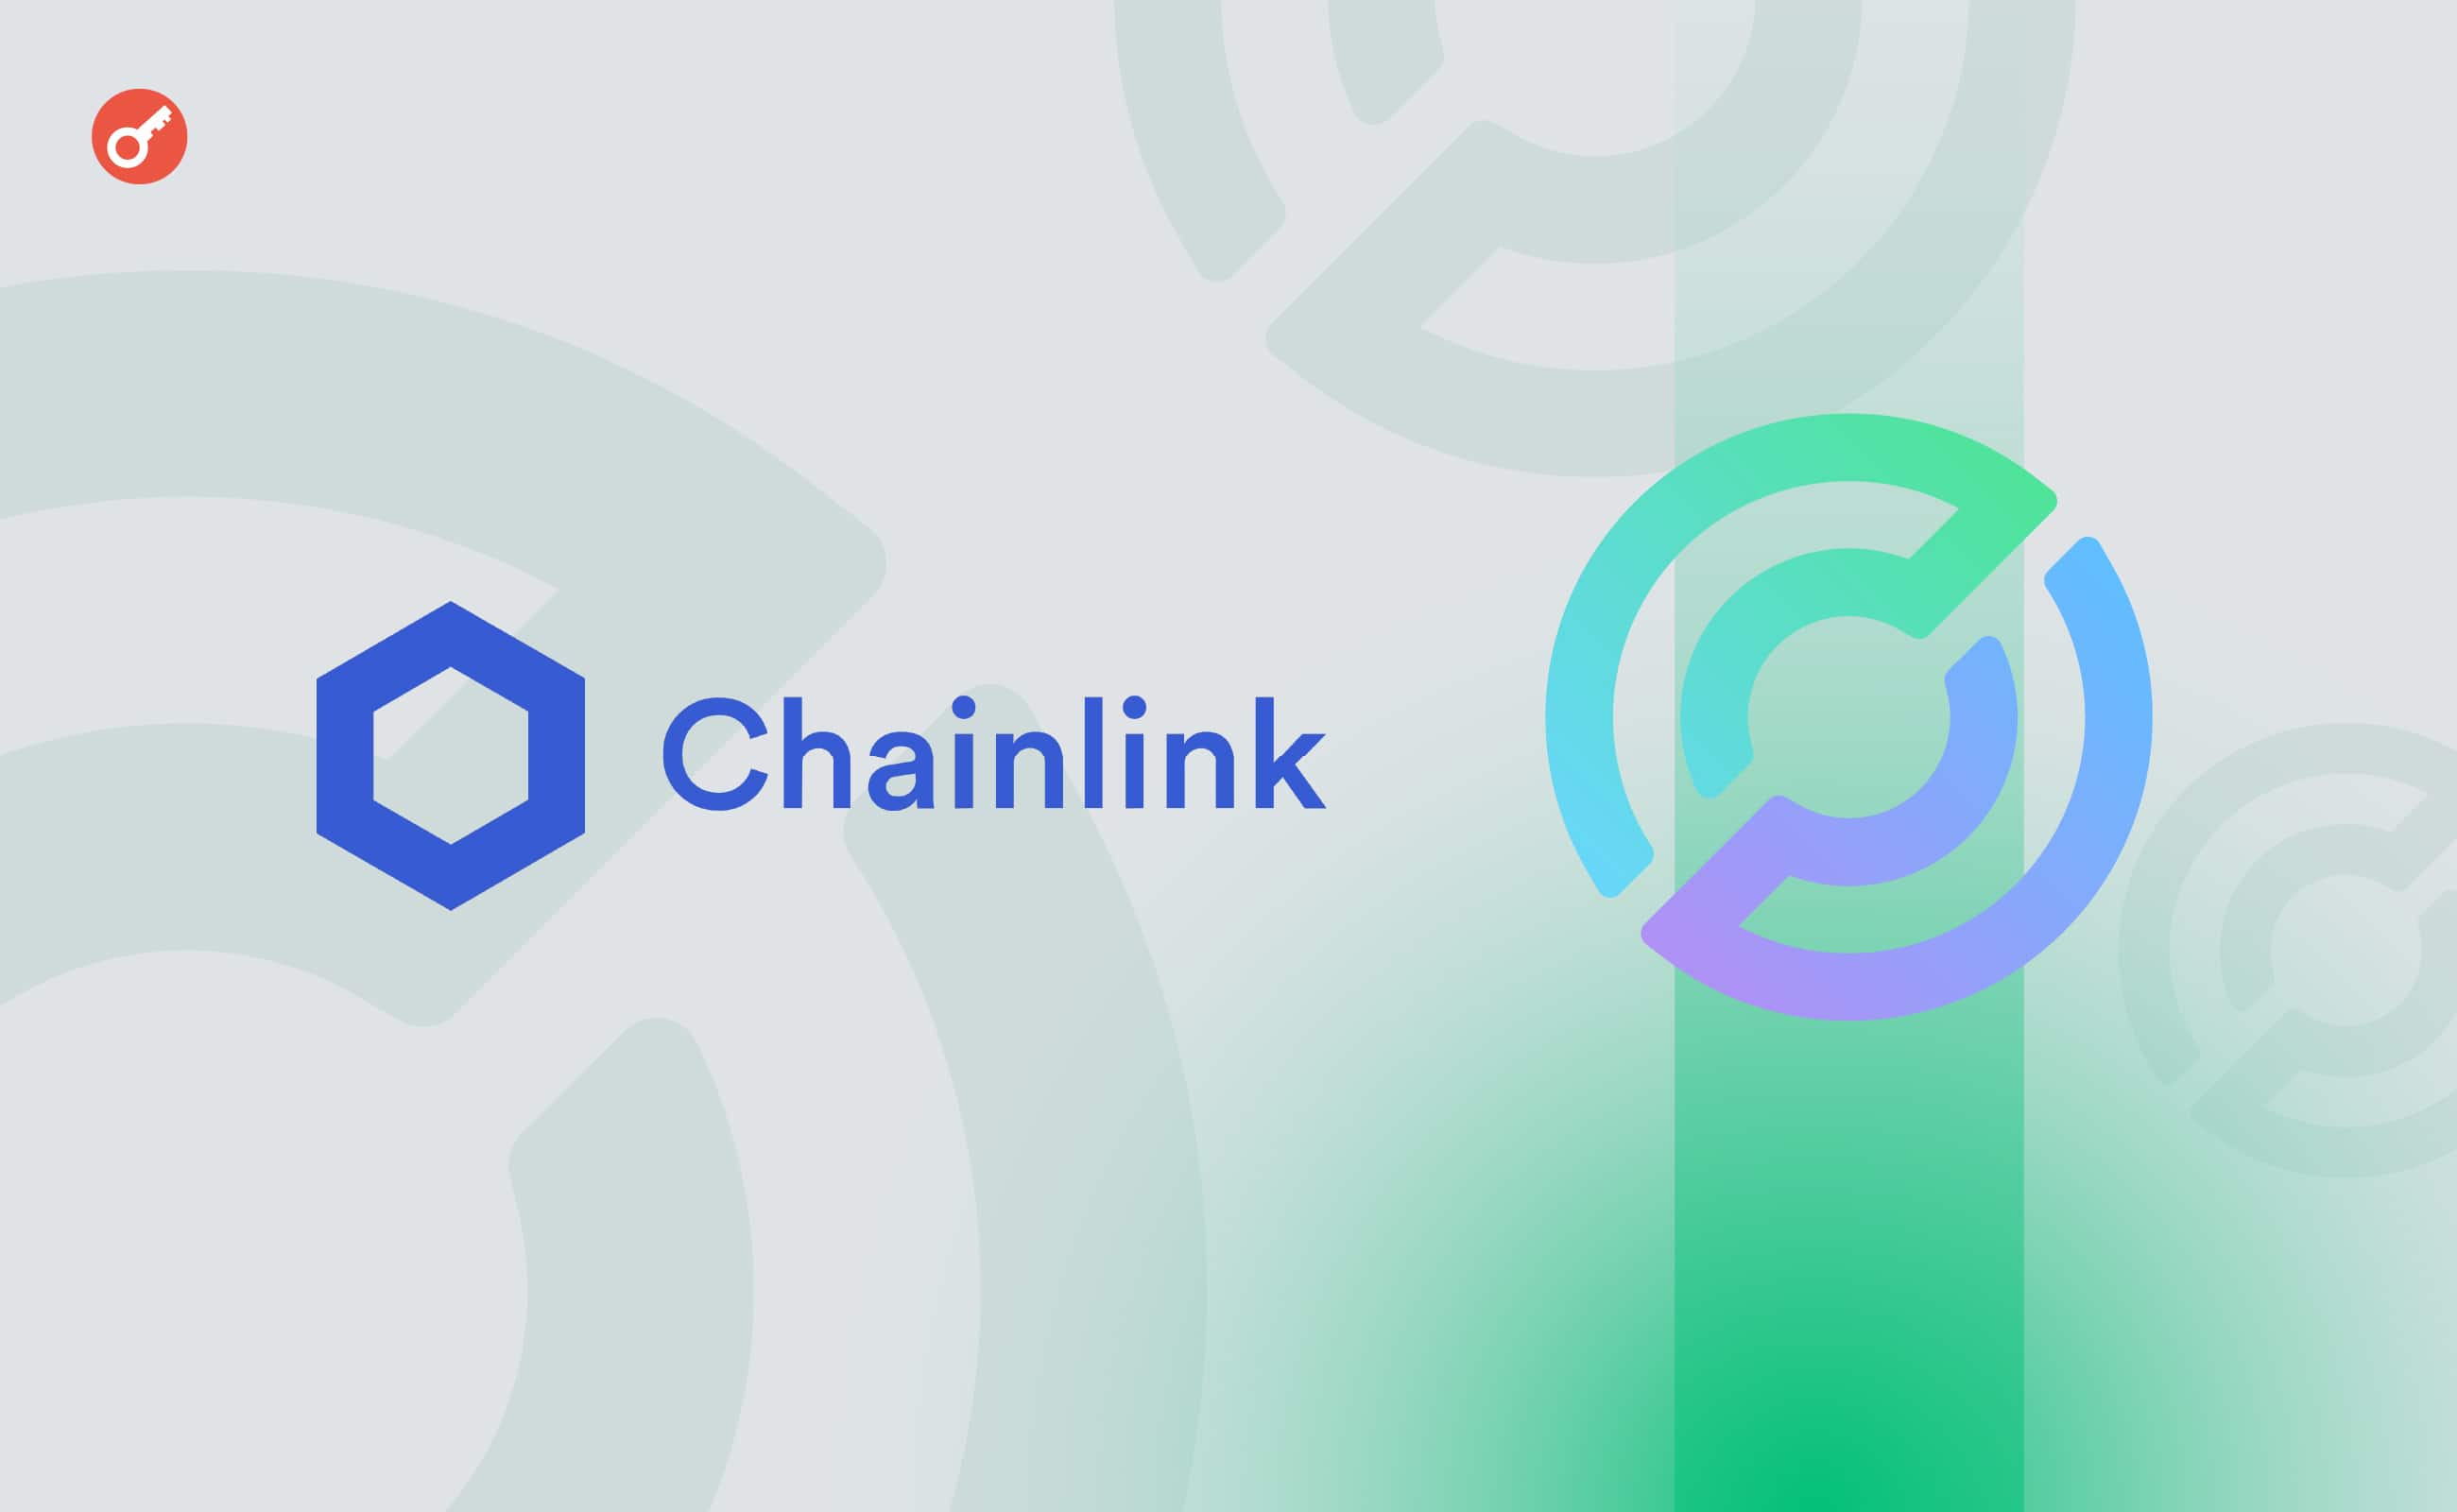 Chainlink інтегрувала протокол CCTP від Circle для безпечних переказів USDC. Головний колаж новини.